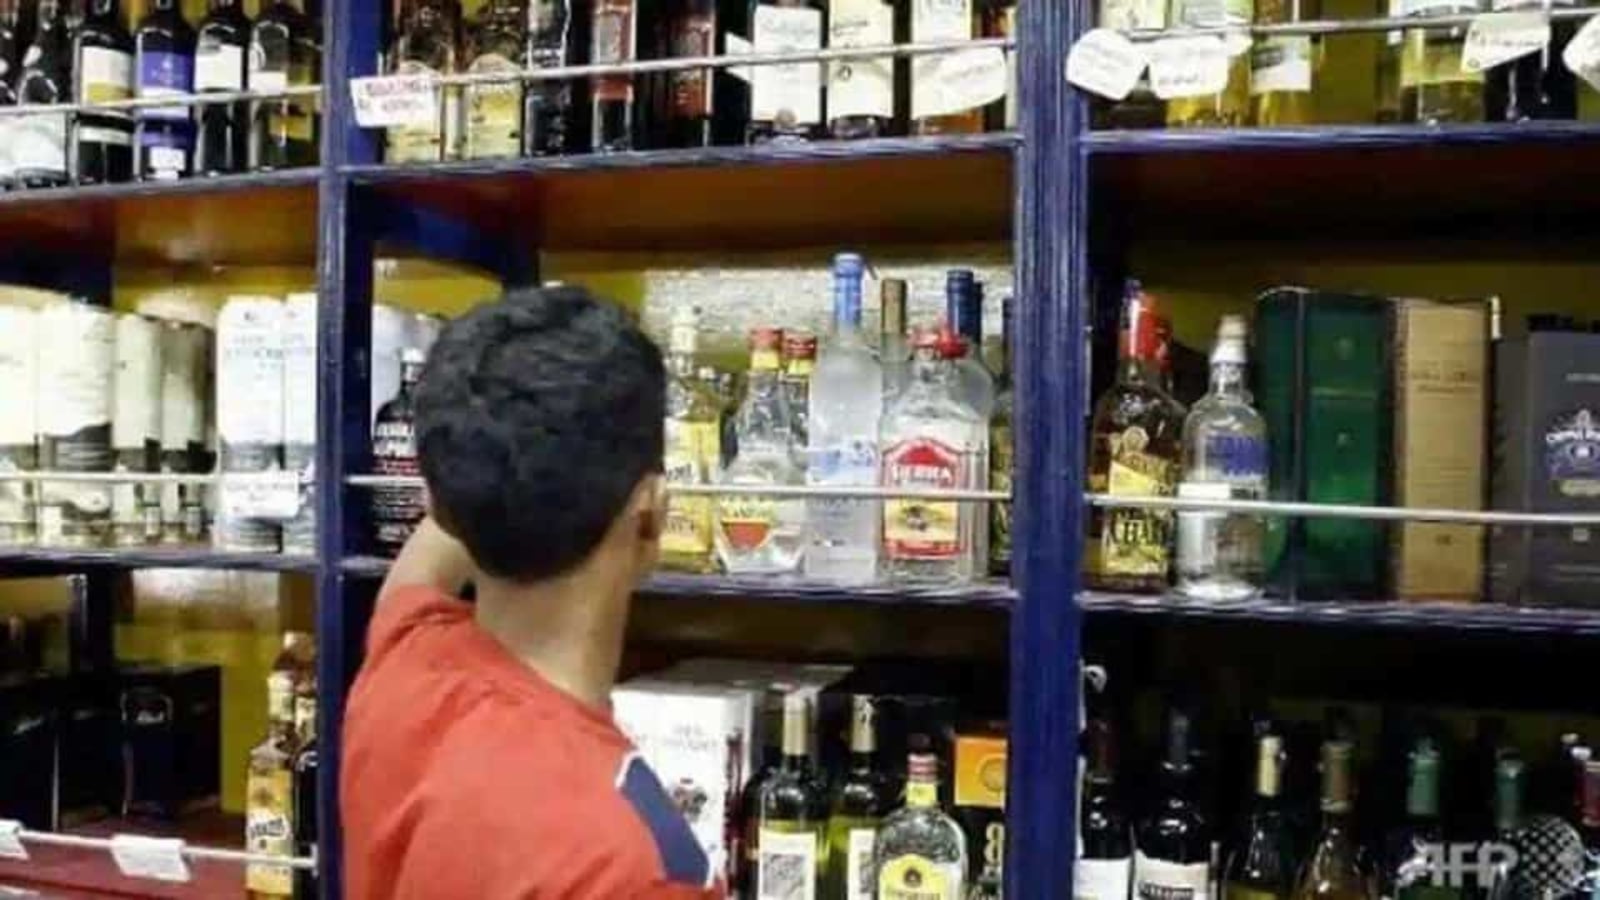 42 shops, 3 owners: Tip of iceberg of Delhi liquor cartels, say officials